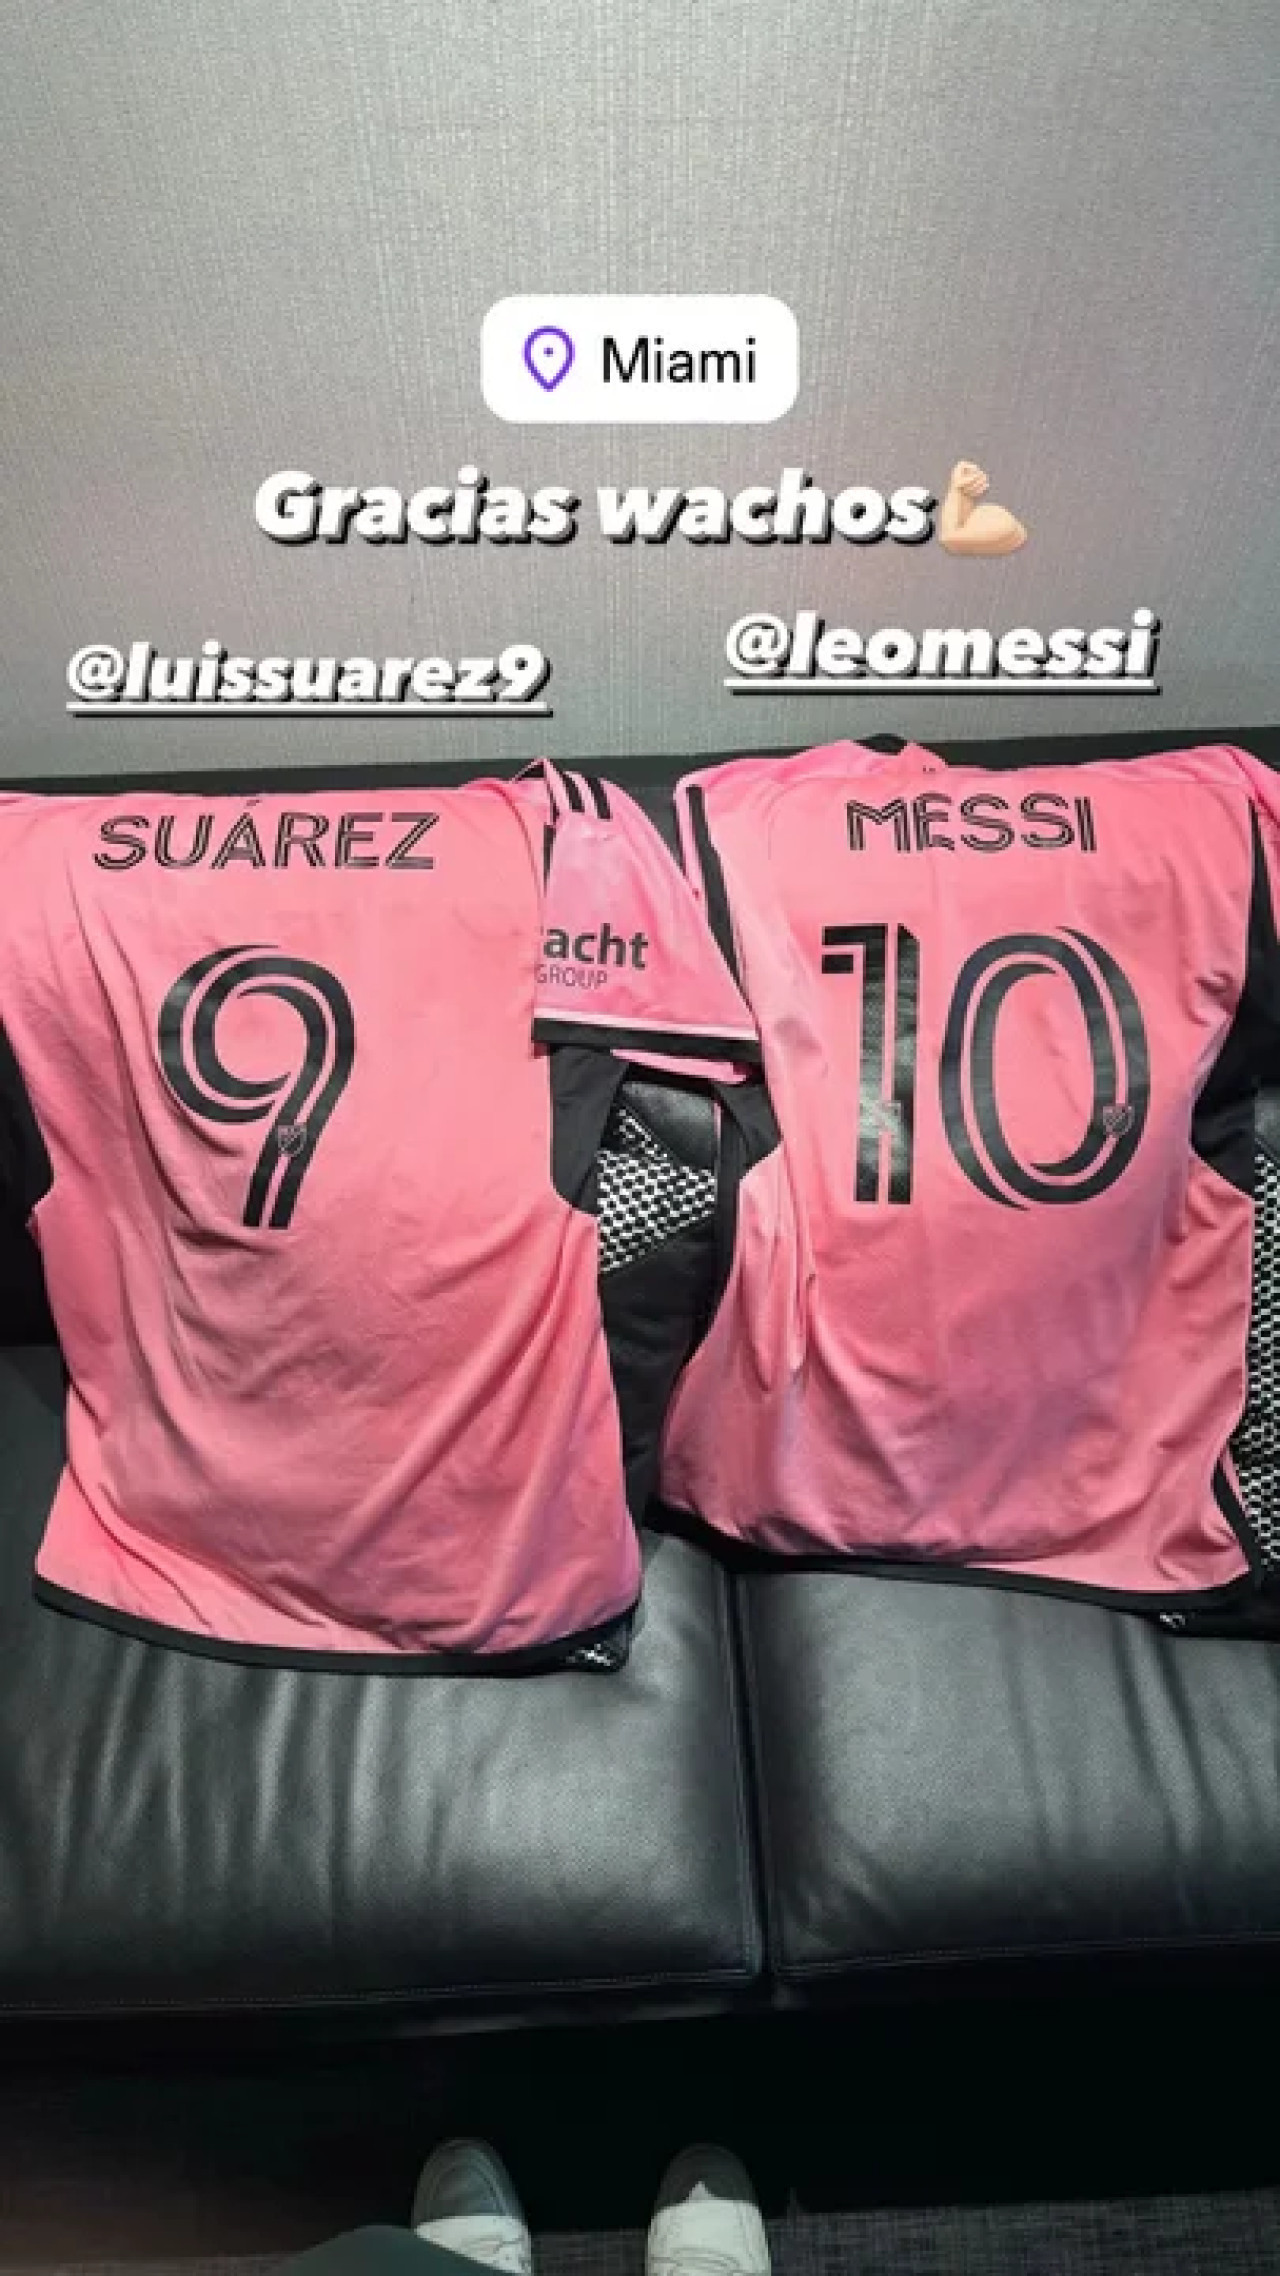 El regalo que recibió Bizarrap de Suárez y Messi. Foto: Instagram.